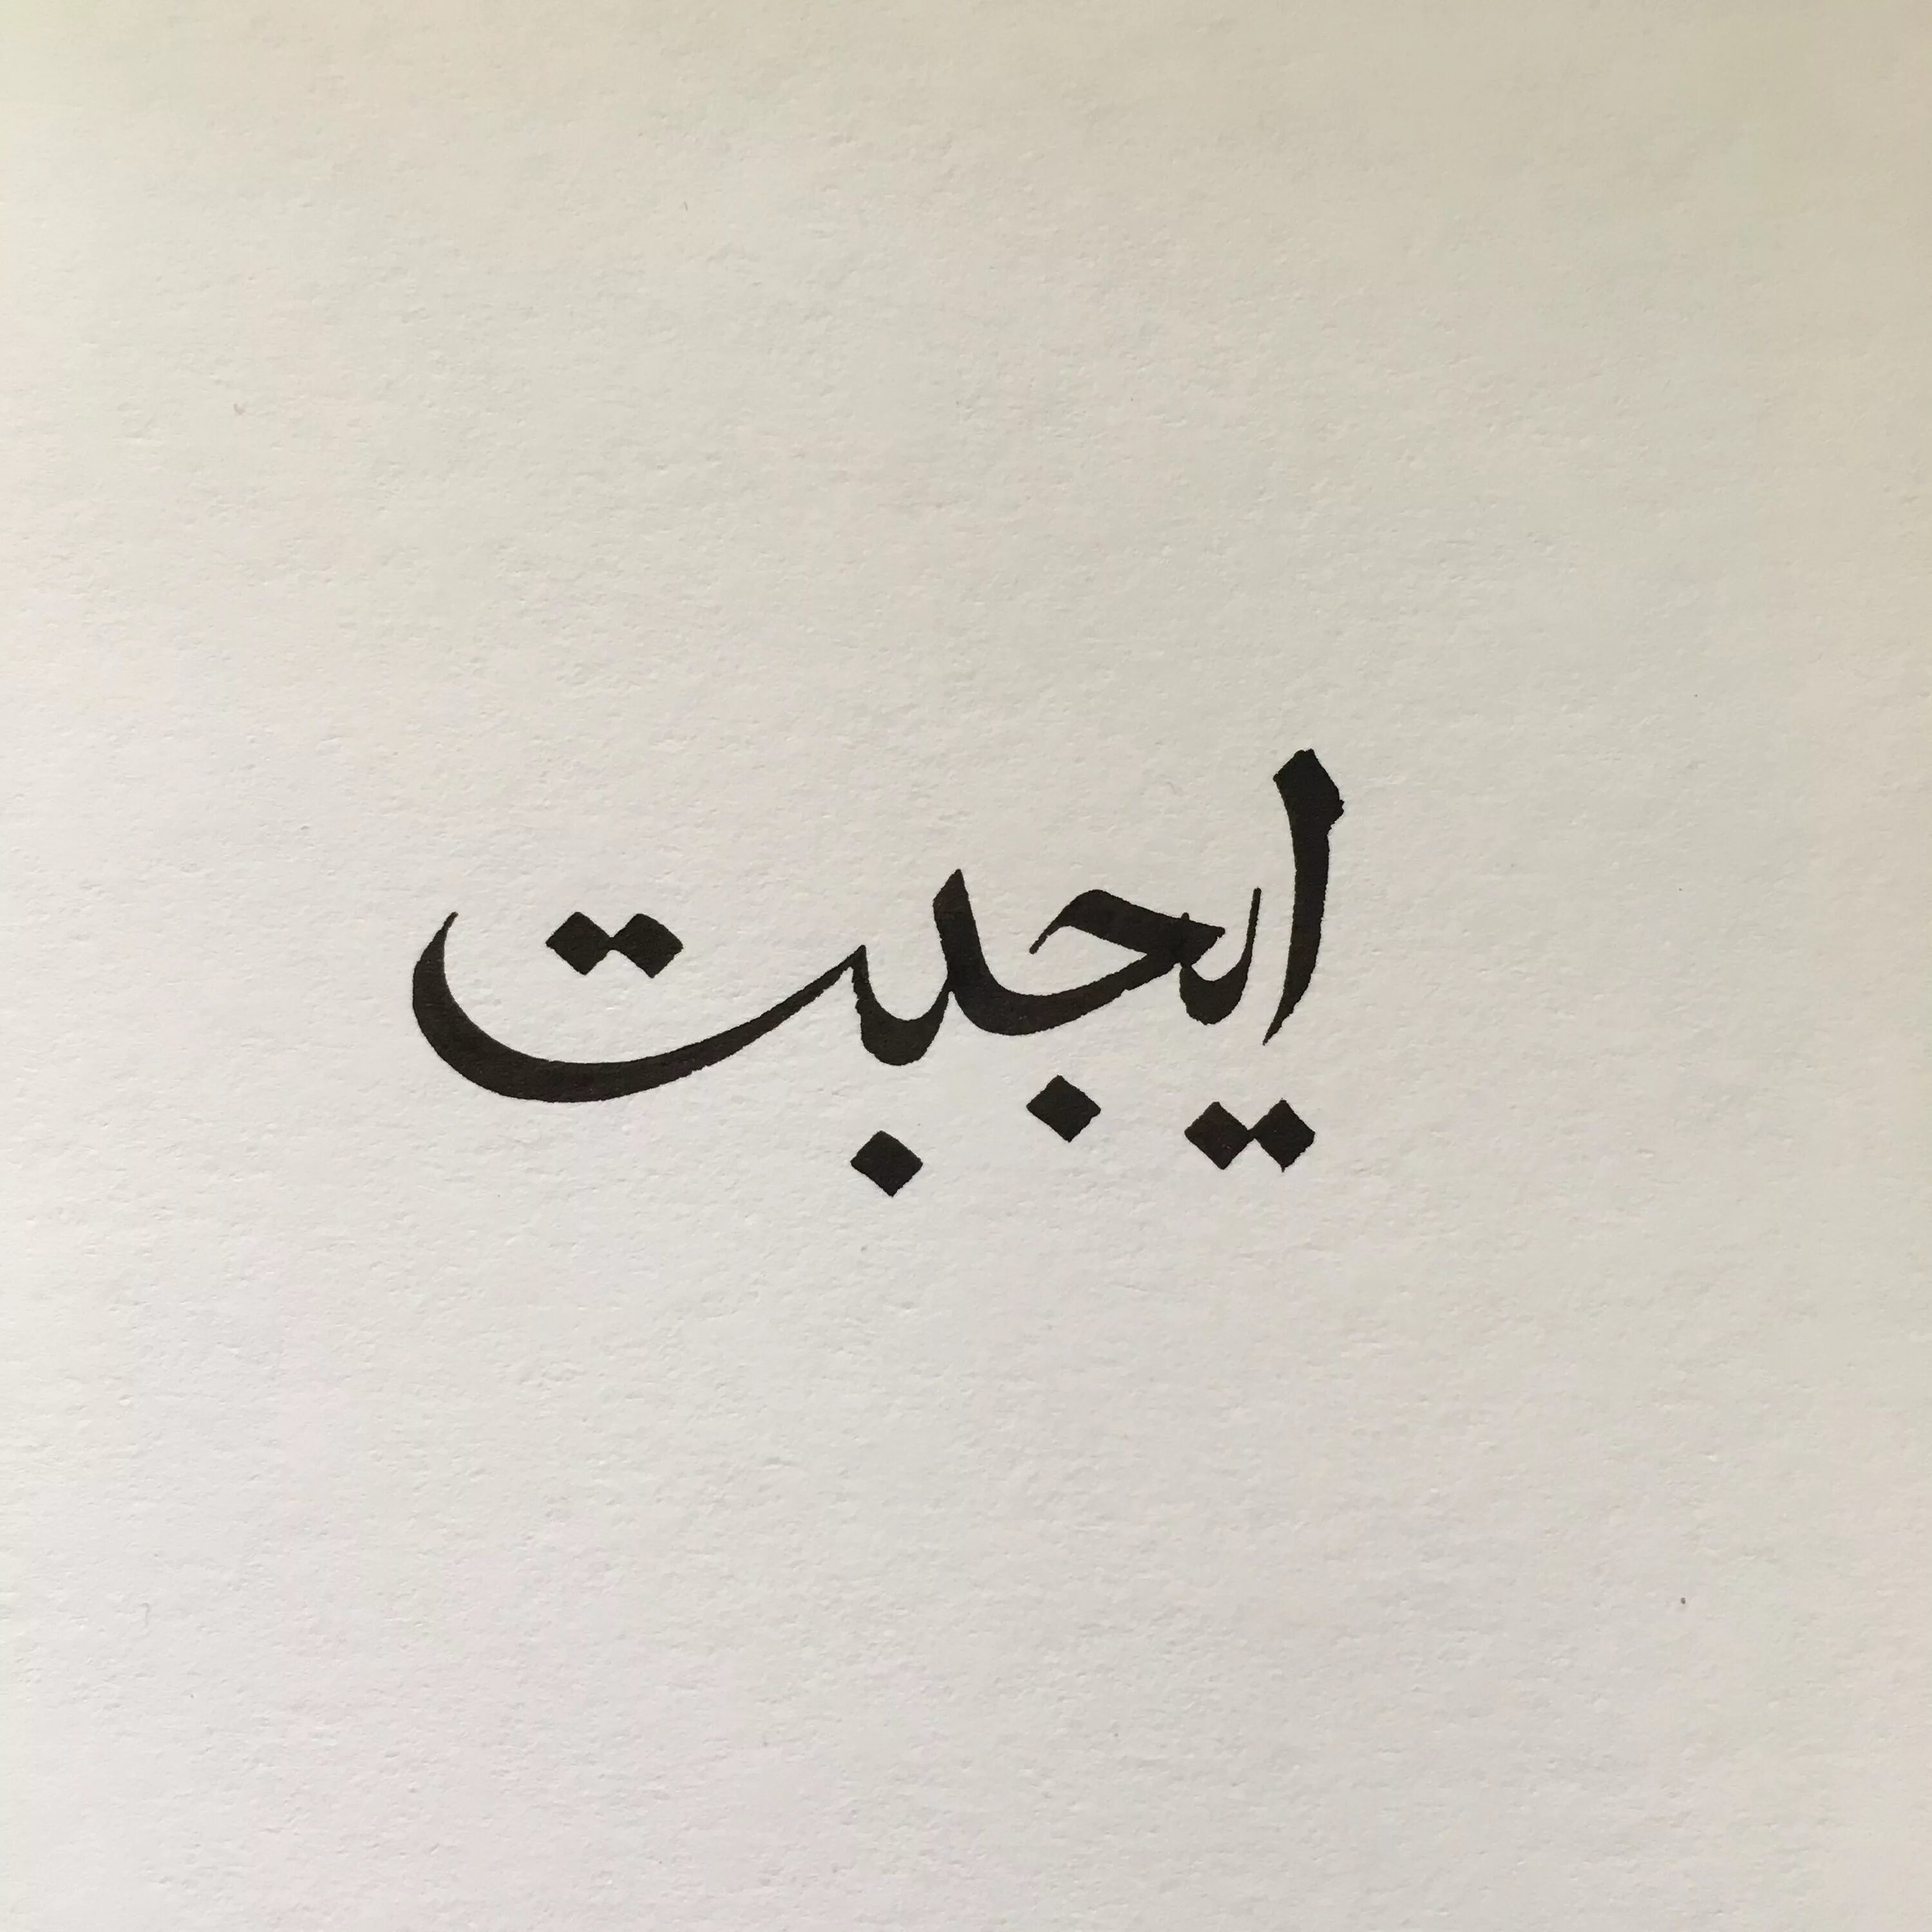 Открытый на арабском. Любовь на арабском. Арабские надписи. Арабские иероглифы. Арабские рисунки.